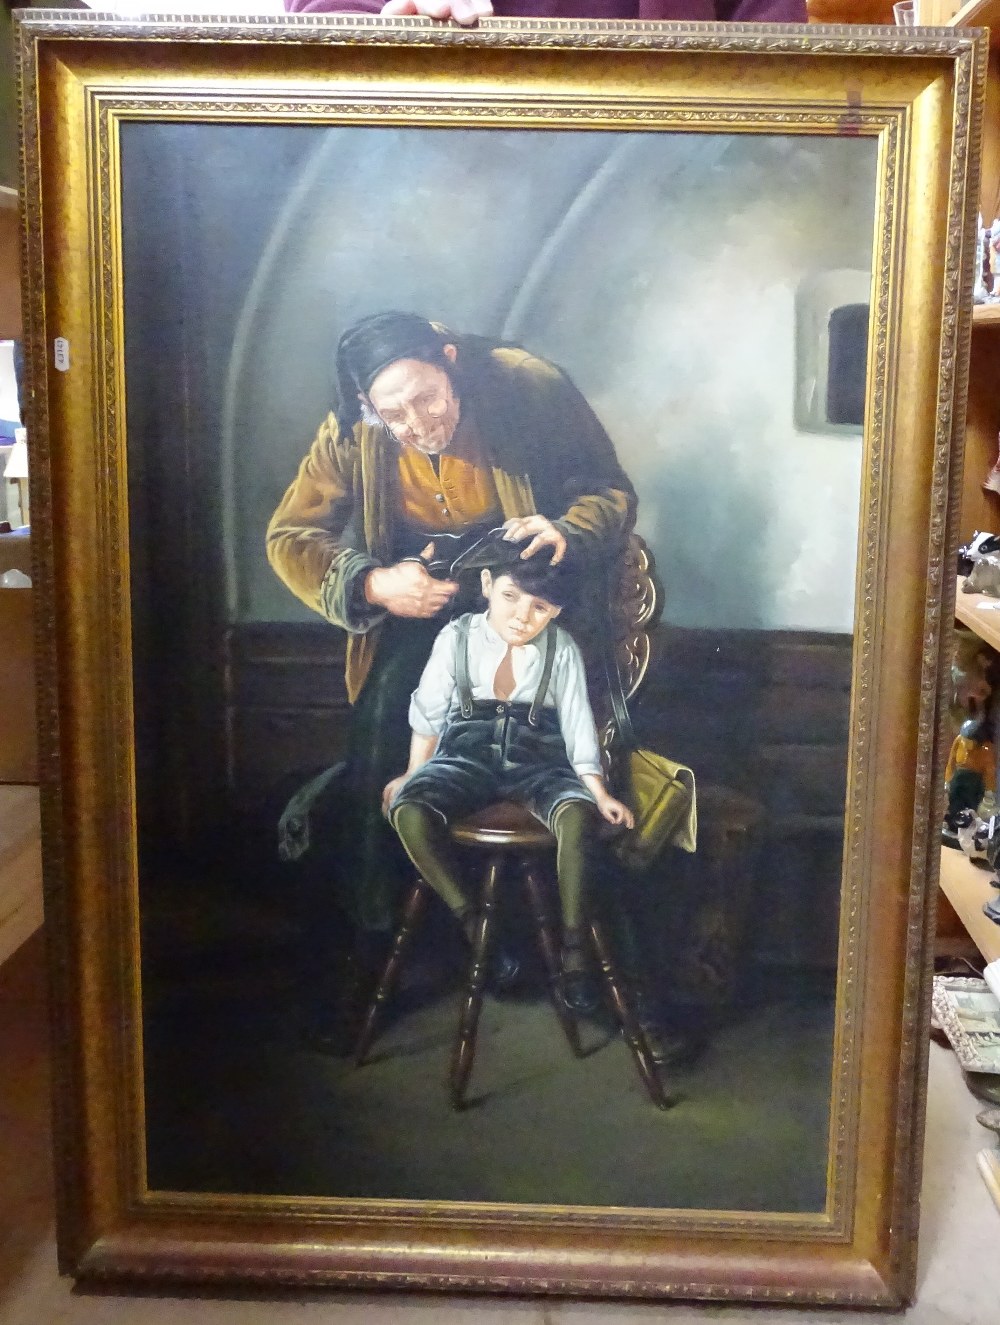 Oleograph on canvas, "the barber", gilt-framed, 106cm x 75cm